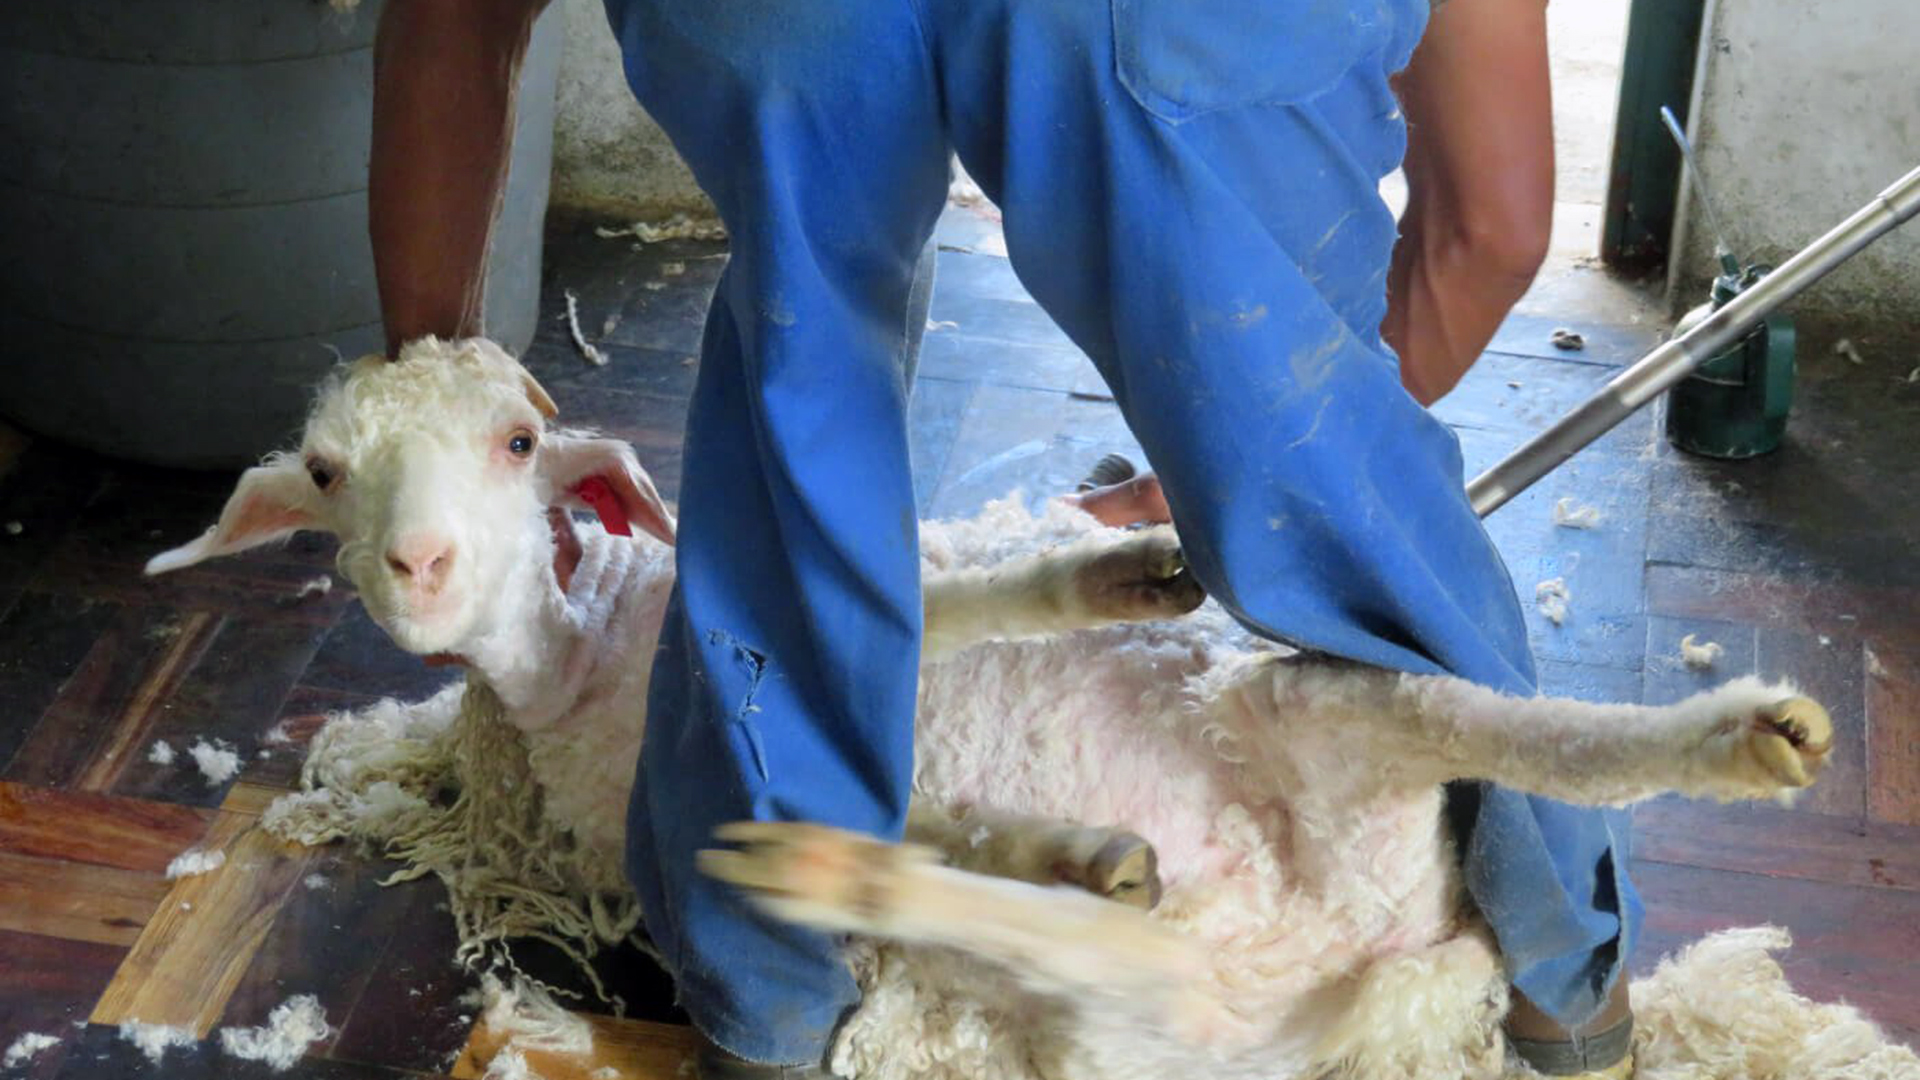 H&M, Inditex y Gap renuncian a usar lana mohair en su compromiso contra el maltrato animal